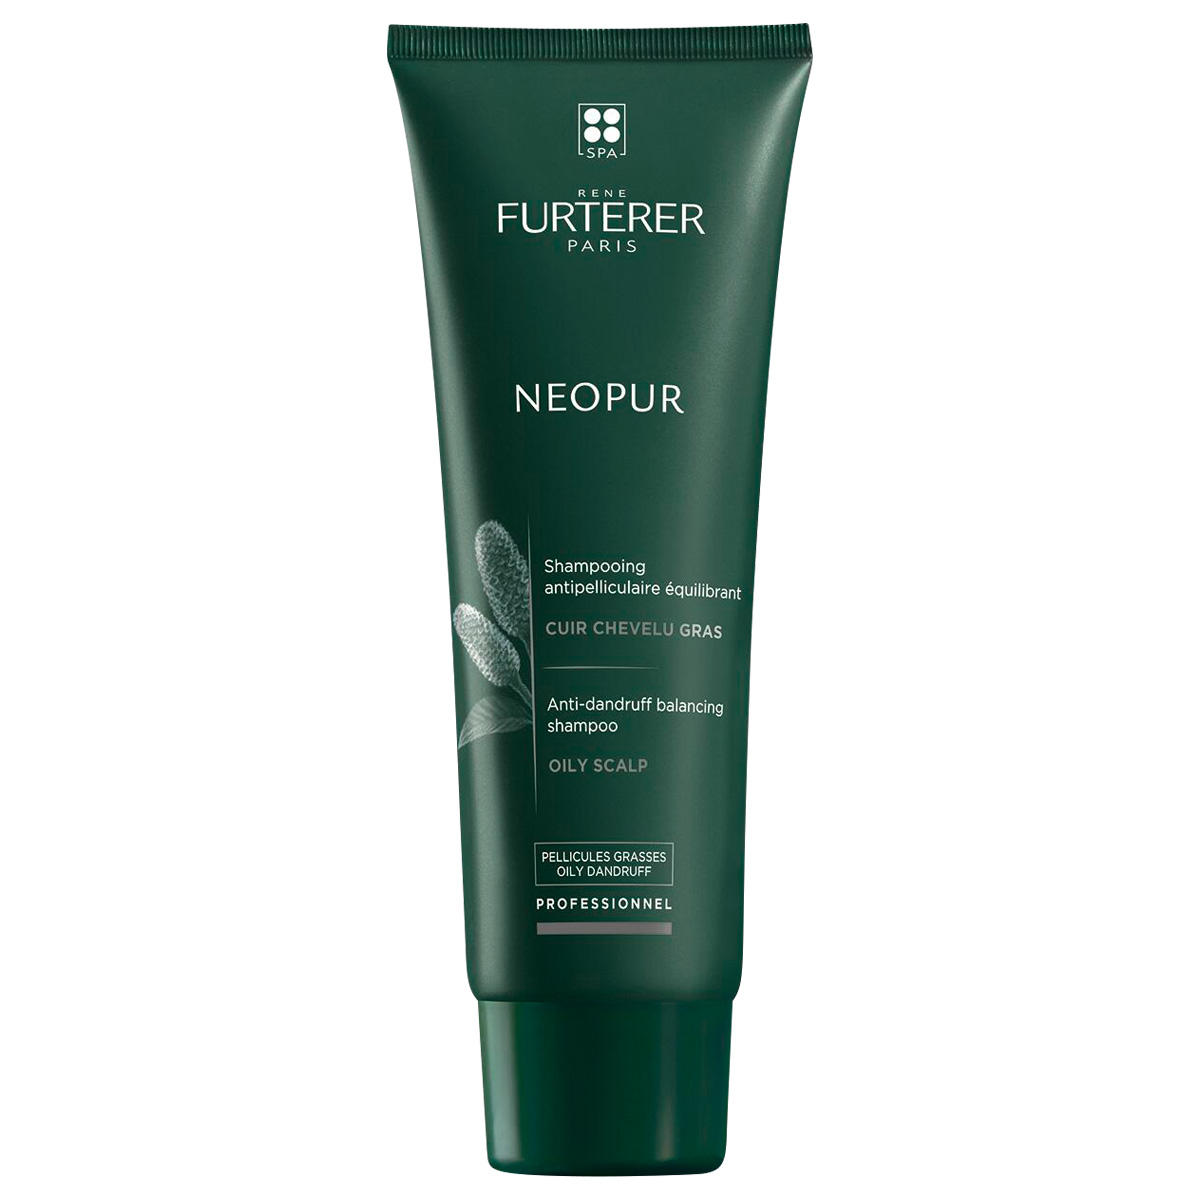 René Furterer Neopur Professionnel Shampoo antiforfora equilibrante per cuoio capelluto grasso 250 ml - 1